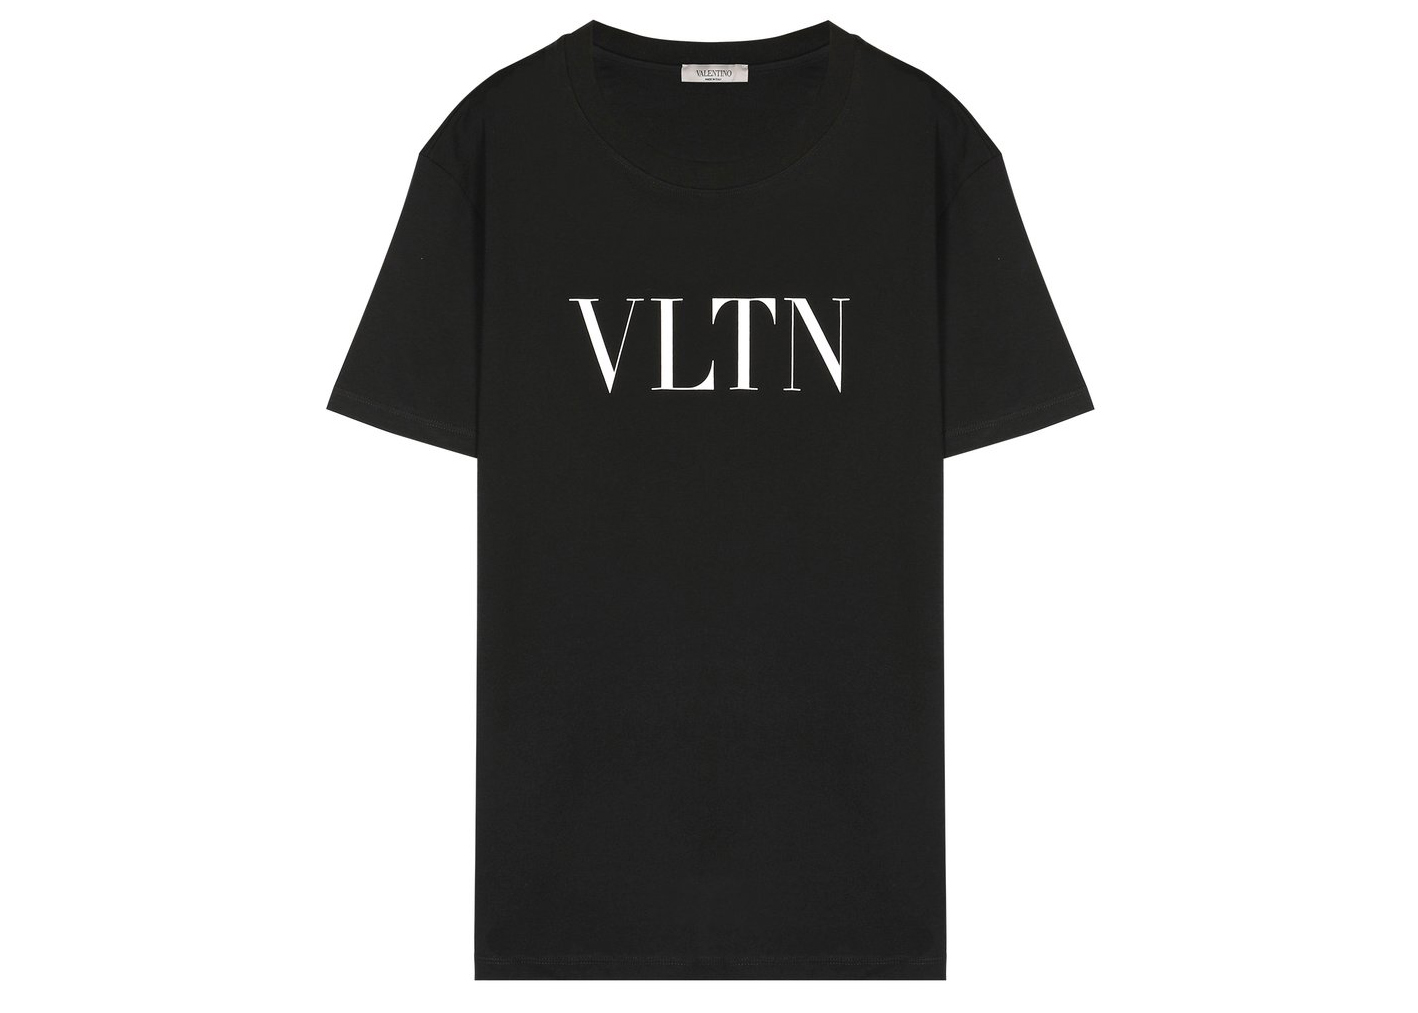 Valentino VLTN Print T-shirt Black/White